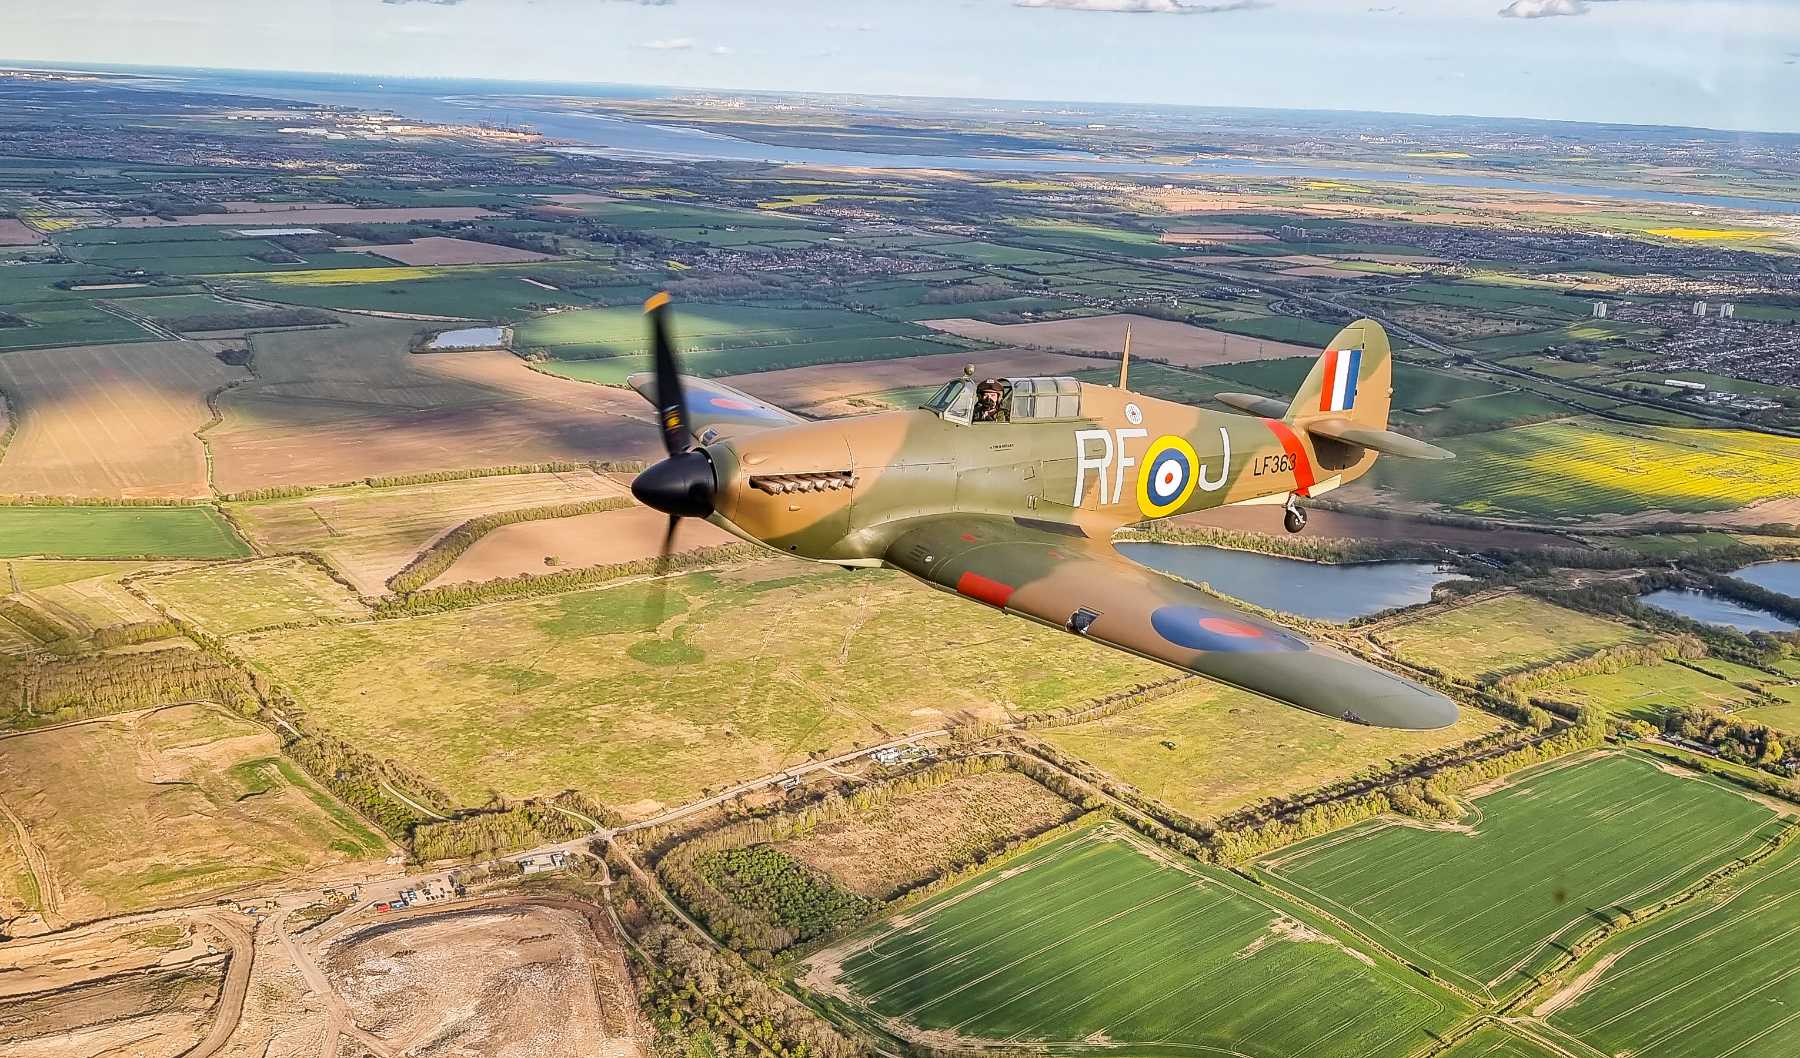 Credit: Battle of Britain Memorial Flight